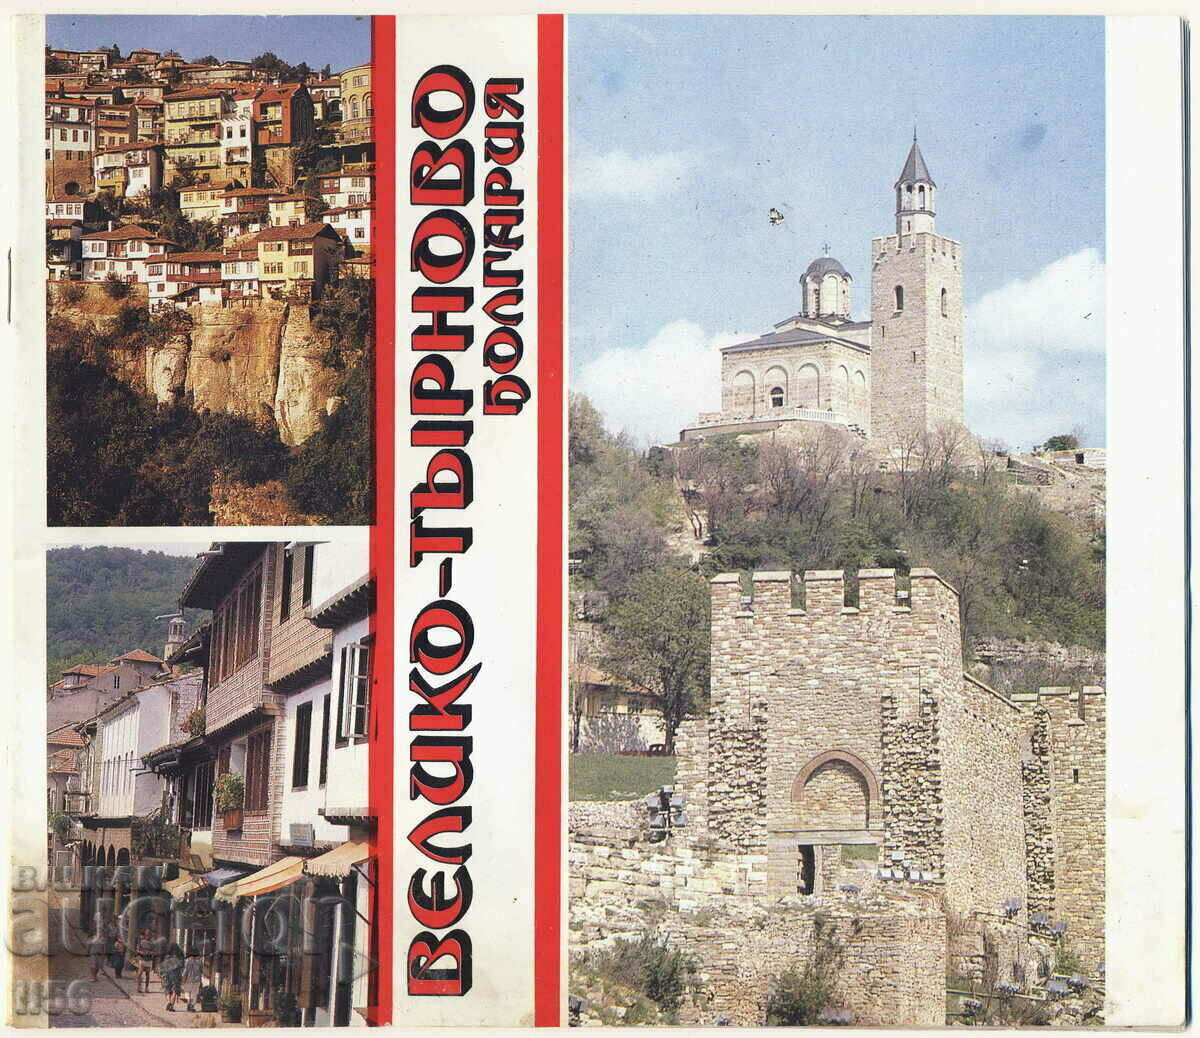 Brosura - Veliko Tarnovo - Balkantourist aprox. 1980